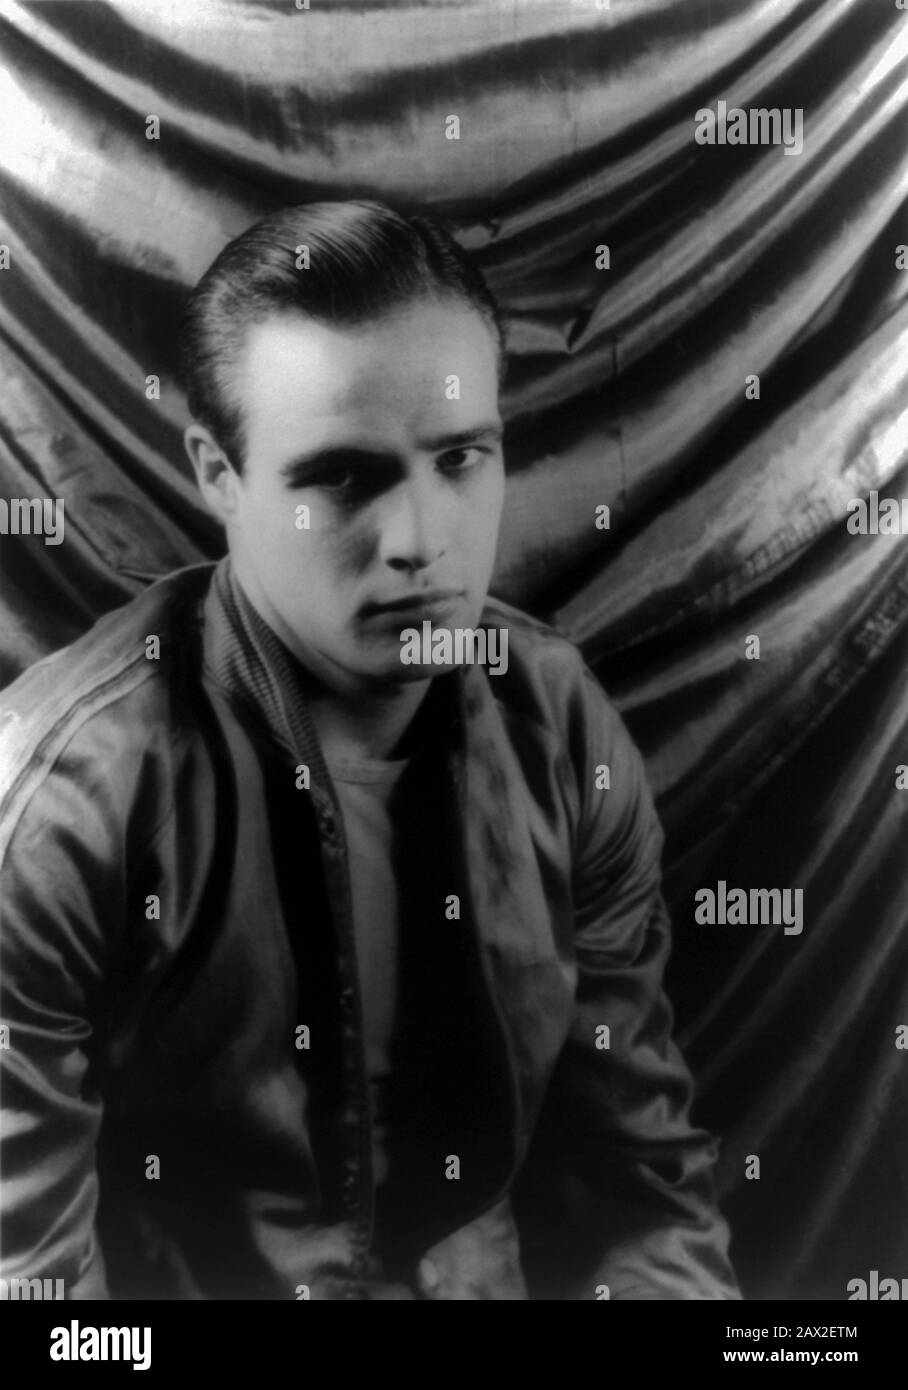 1948 , 27 décembre , USA : le futur acteur de cinéma MARLON BRANDO ( 1924 - 2004 ) dans son rôle de théâtre dans ' UN Streetcar Nommé Désir ' par Tennessee Williams , photographié par l'écrivain , critique , peintre et photographe CARL VAN VECHTEN ( 1880 - 1964 ) - AUTORITRATTO - selfporter - FOTO STORICA STORICHE - HISTOIRE - CINÉMA - TEATRO - THATRE - gay - omosessuale - omosessualità - LGBT - homosexuel - graisse - Brillantina - balle de baseball - raso - satin -- PAS POUR L'UTILISATION DE PUBBLICITARY ---- NON POUR USO PUBBLICITARIO ------------------- ARCHIVIO Banque D'Images